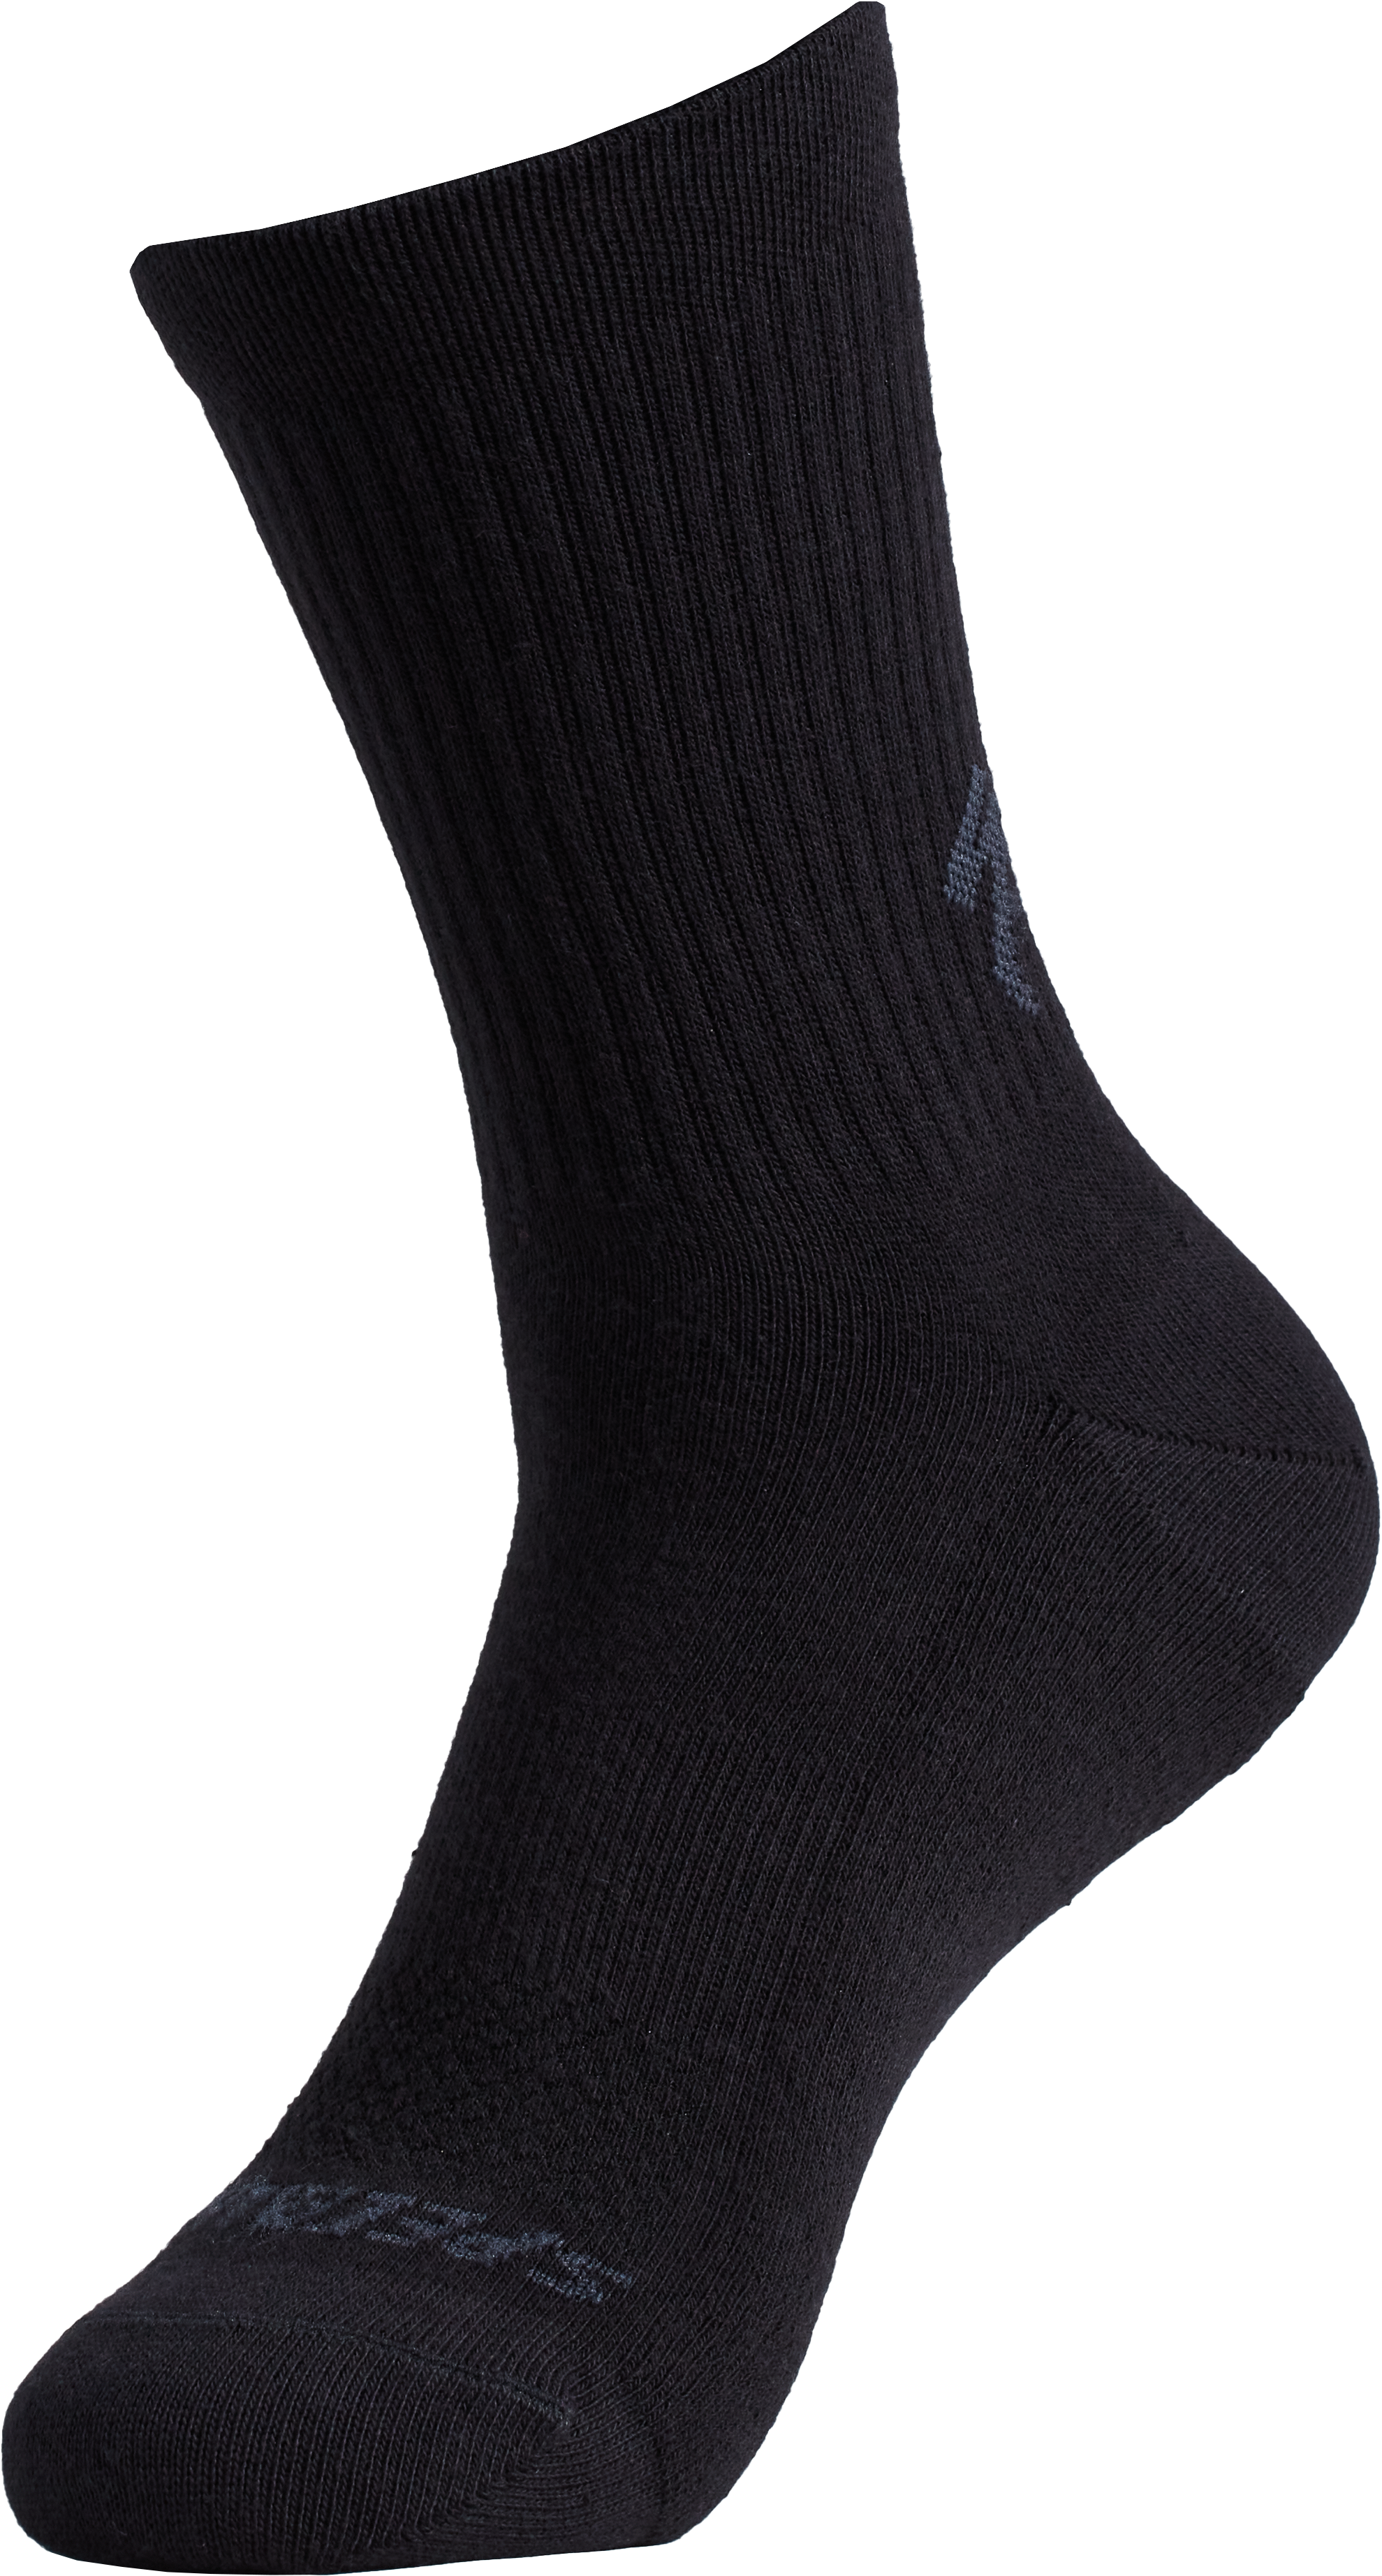 Cotton Tall Socks